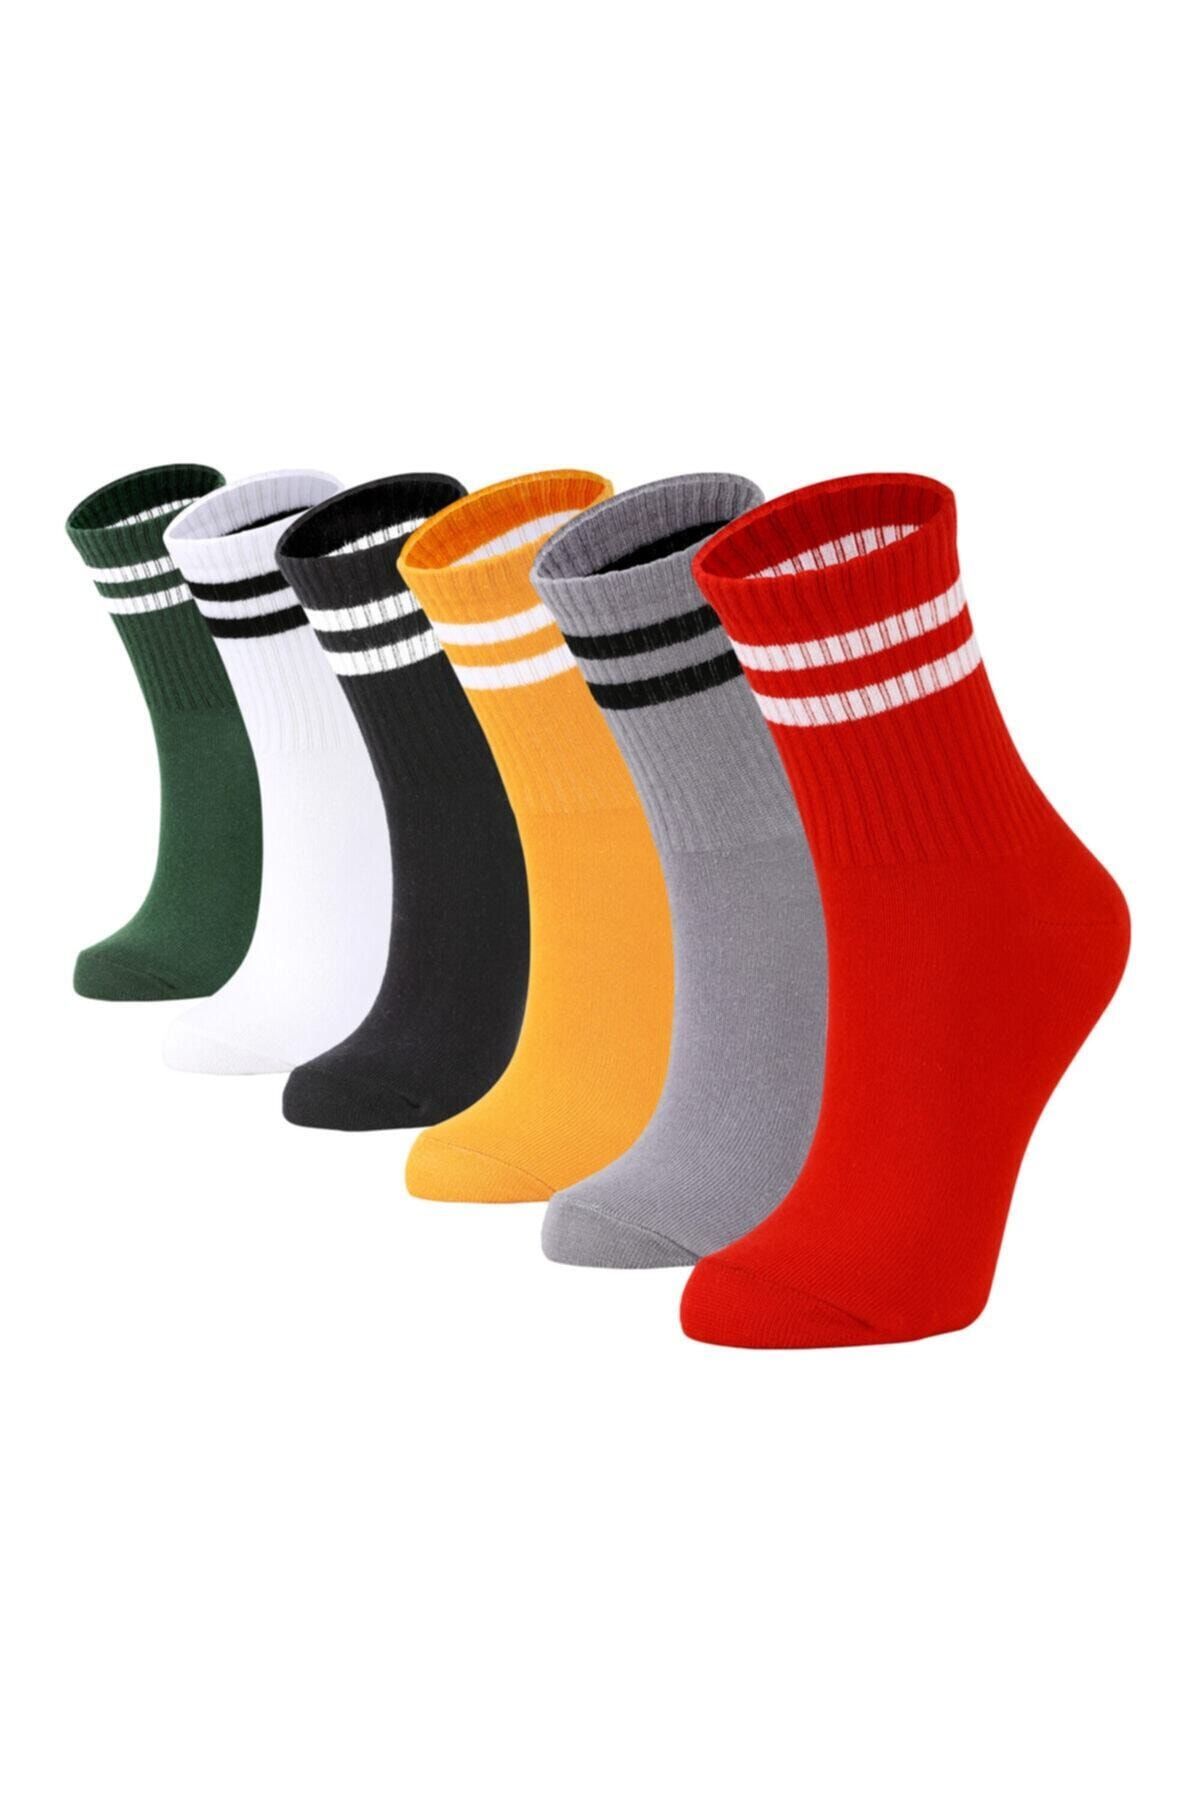 İkonik Socks 12 Çift Unisex Karışık Renkli Çizgili Kolej Çorap